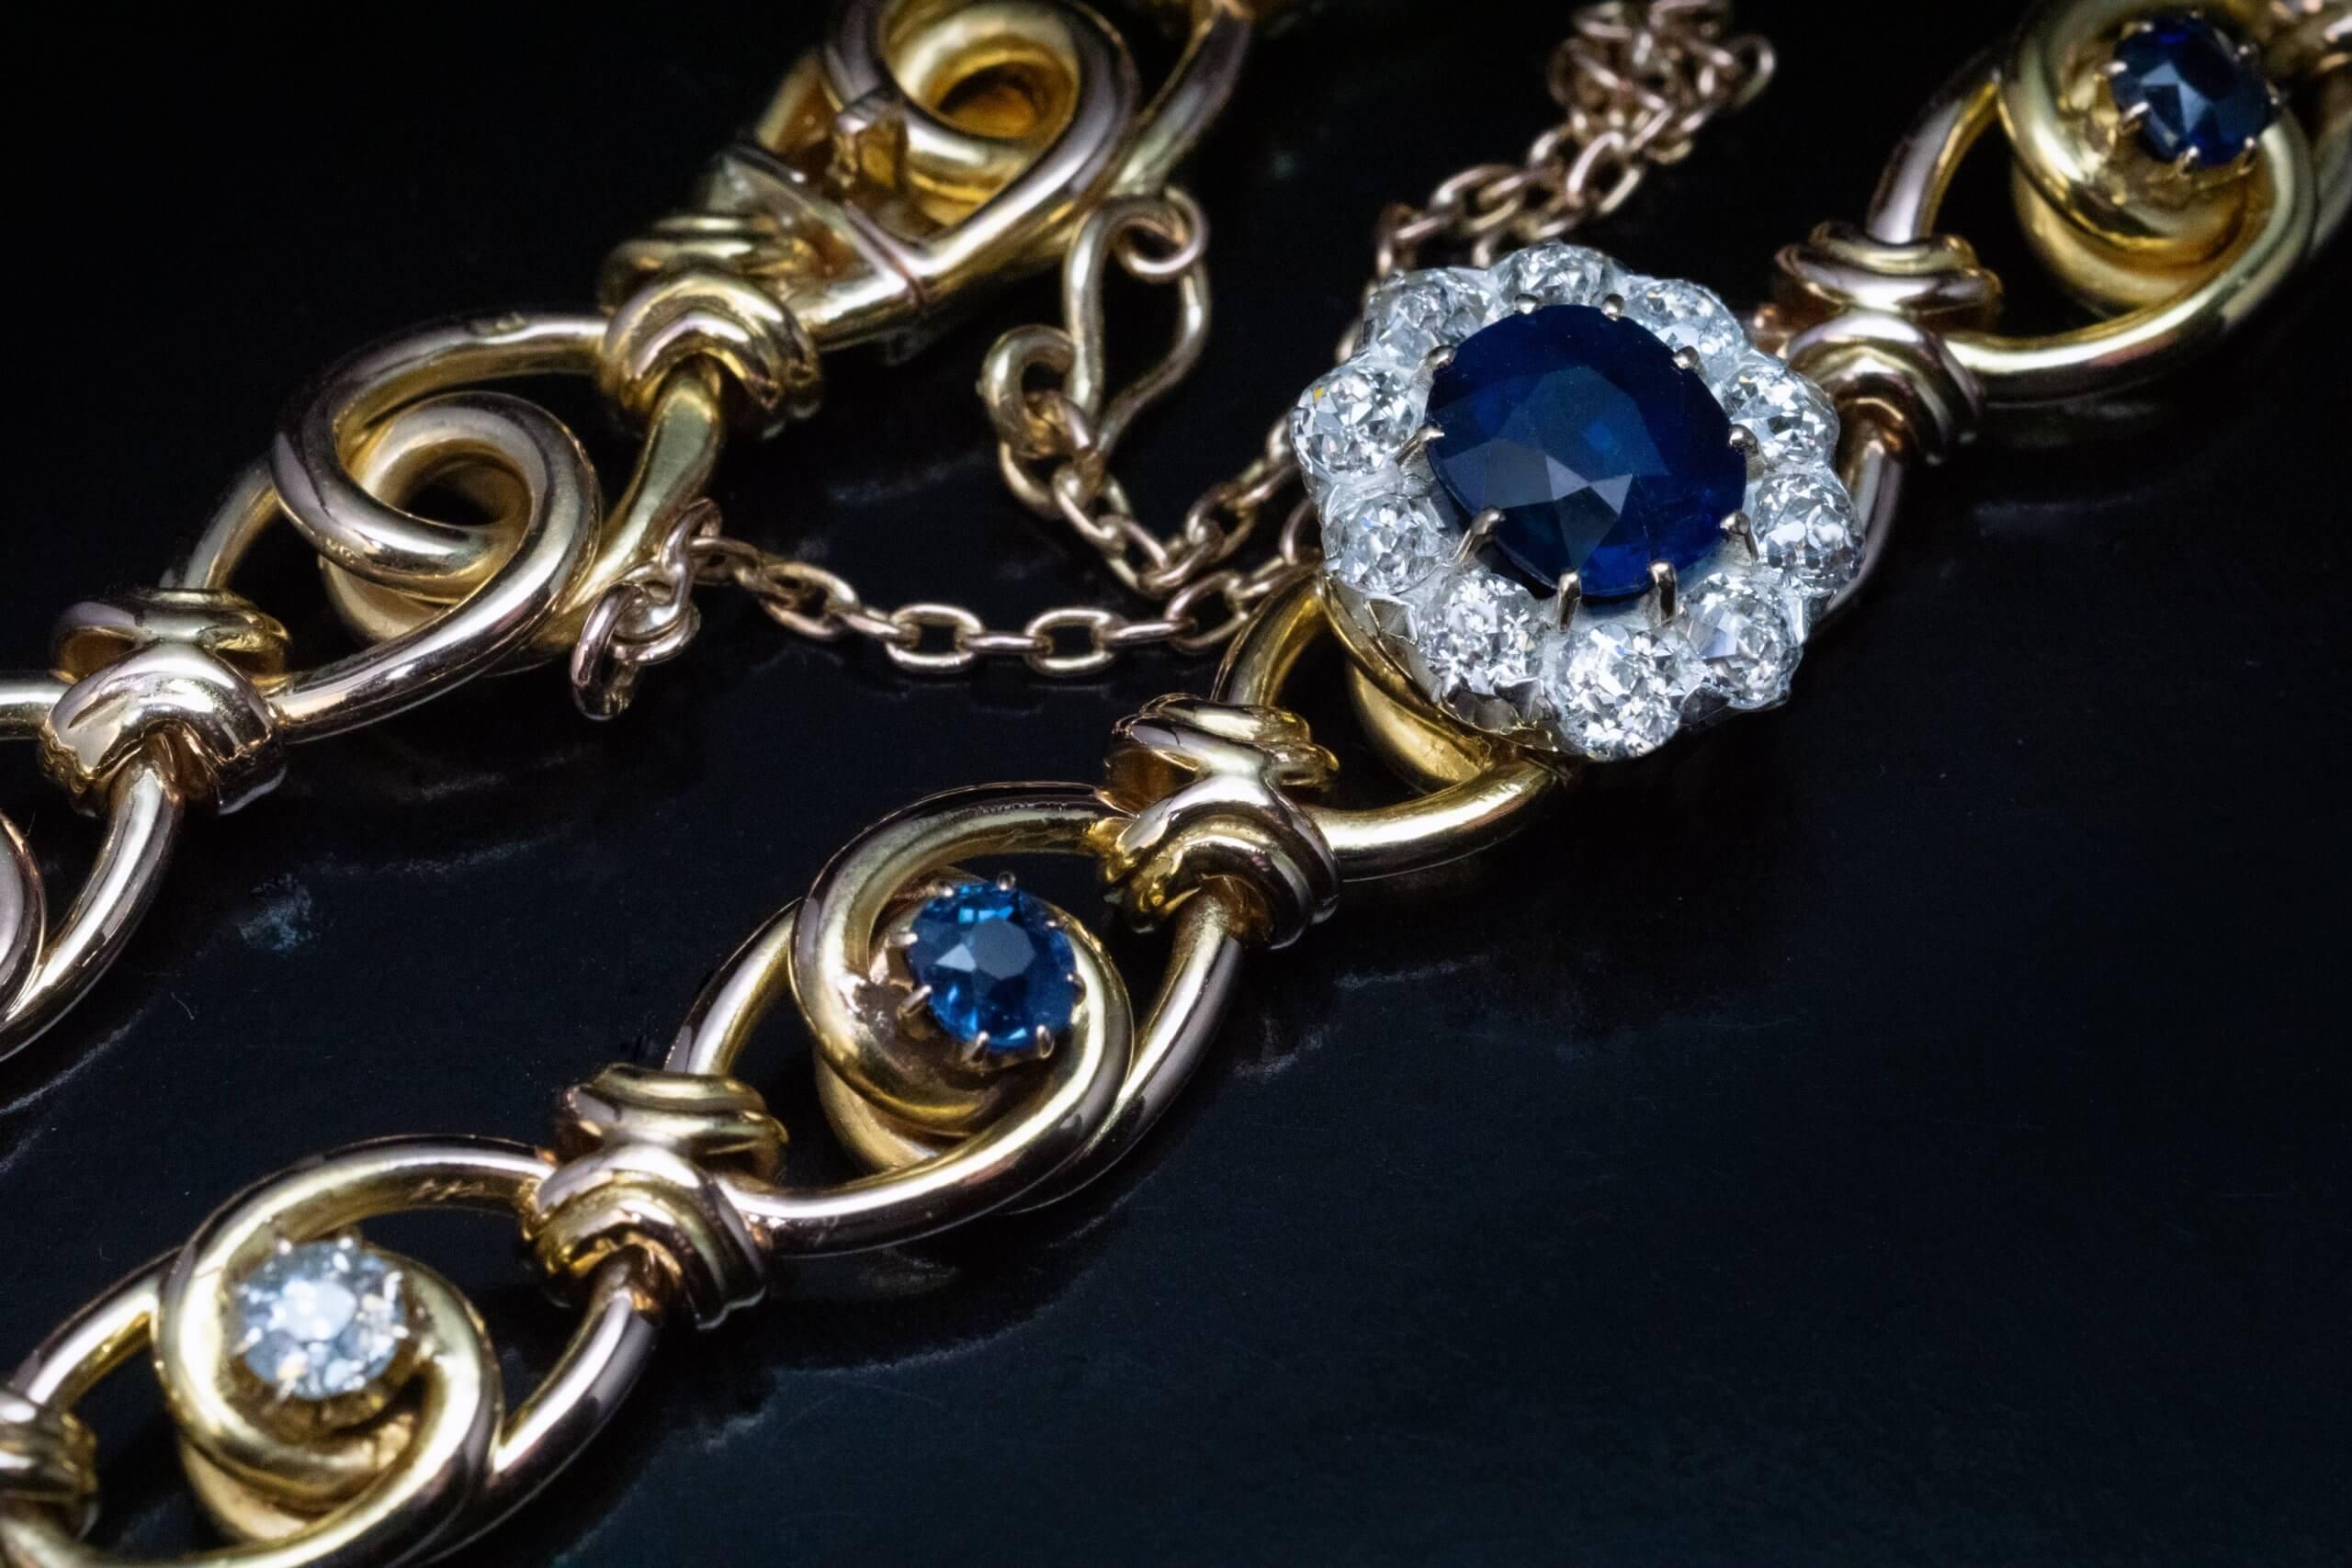 Circa 1890s  Le bracelet à maillons en or jaune 14 carats est centré sur un saphir bleu nuit entouré de diamants étincelants de taille ancienne (sertis en argent sur or). La grappe de saphirs et de diamants est flanquée de deux petits saphirs et de